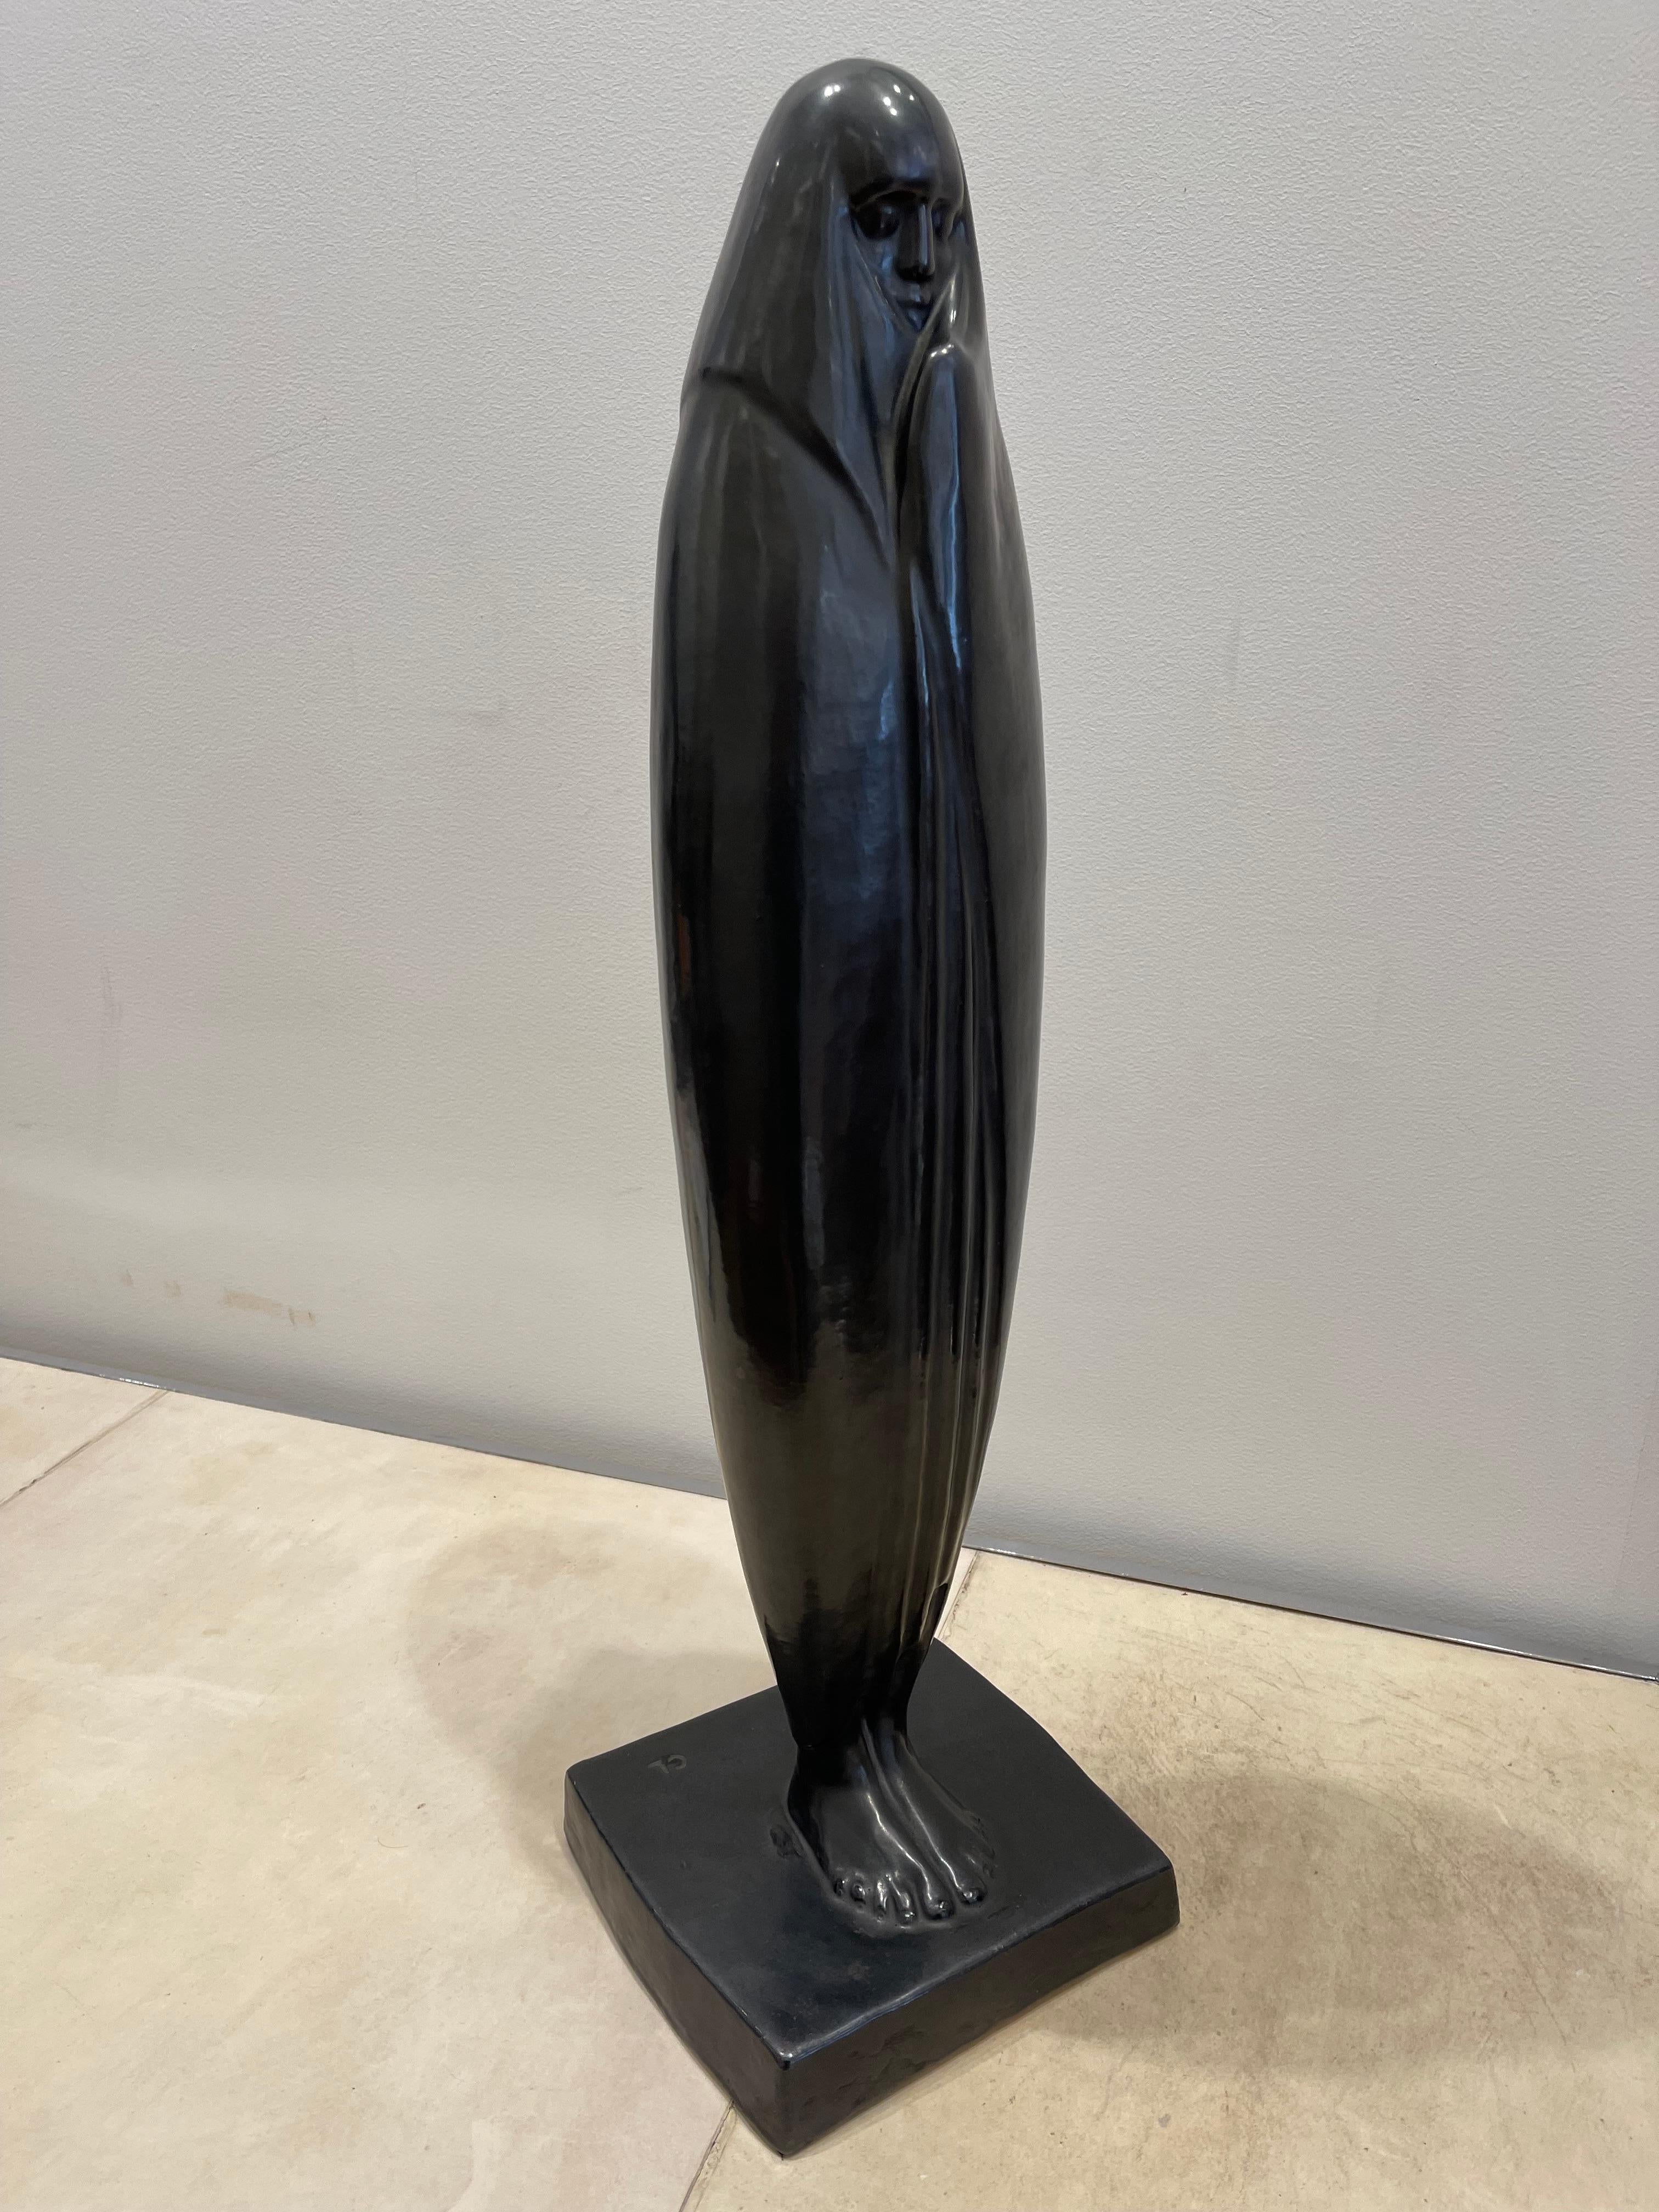 Superbe céramique émaillée de 72 cm de haut de Céline Lepage (1882-1928) représentant une dame voilée de Marrakech (Maroc) dans les années 1920, période Art déco français. Elle est réalisée en terre cuite avec une patine grise anthracite et